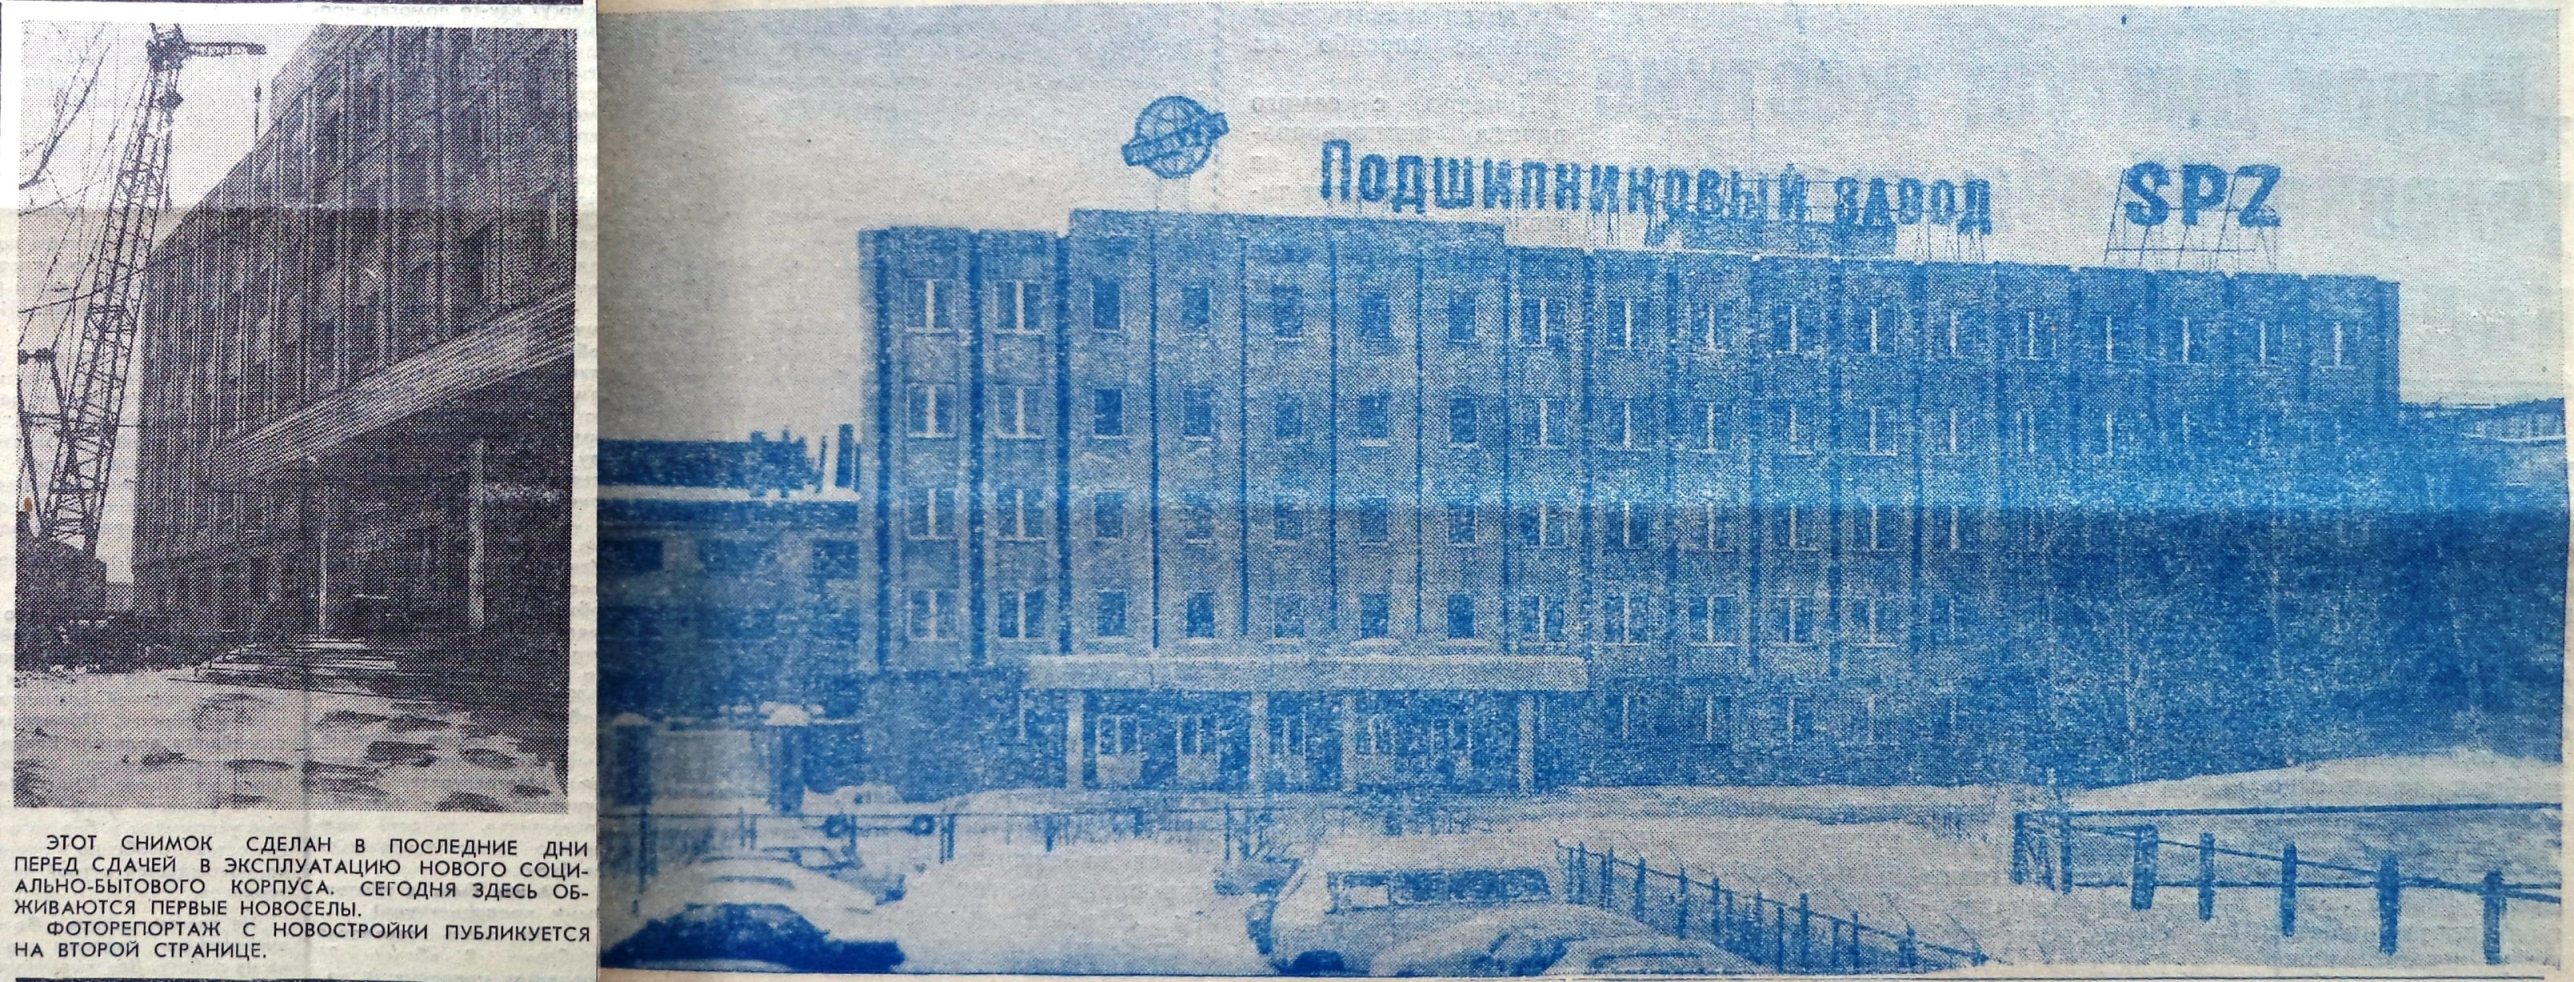 Ленинское Знамя-1992-29 января.